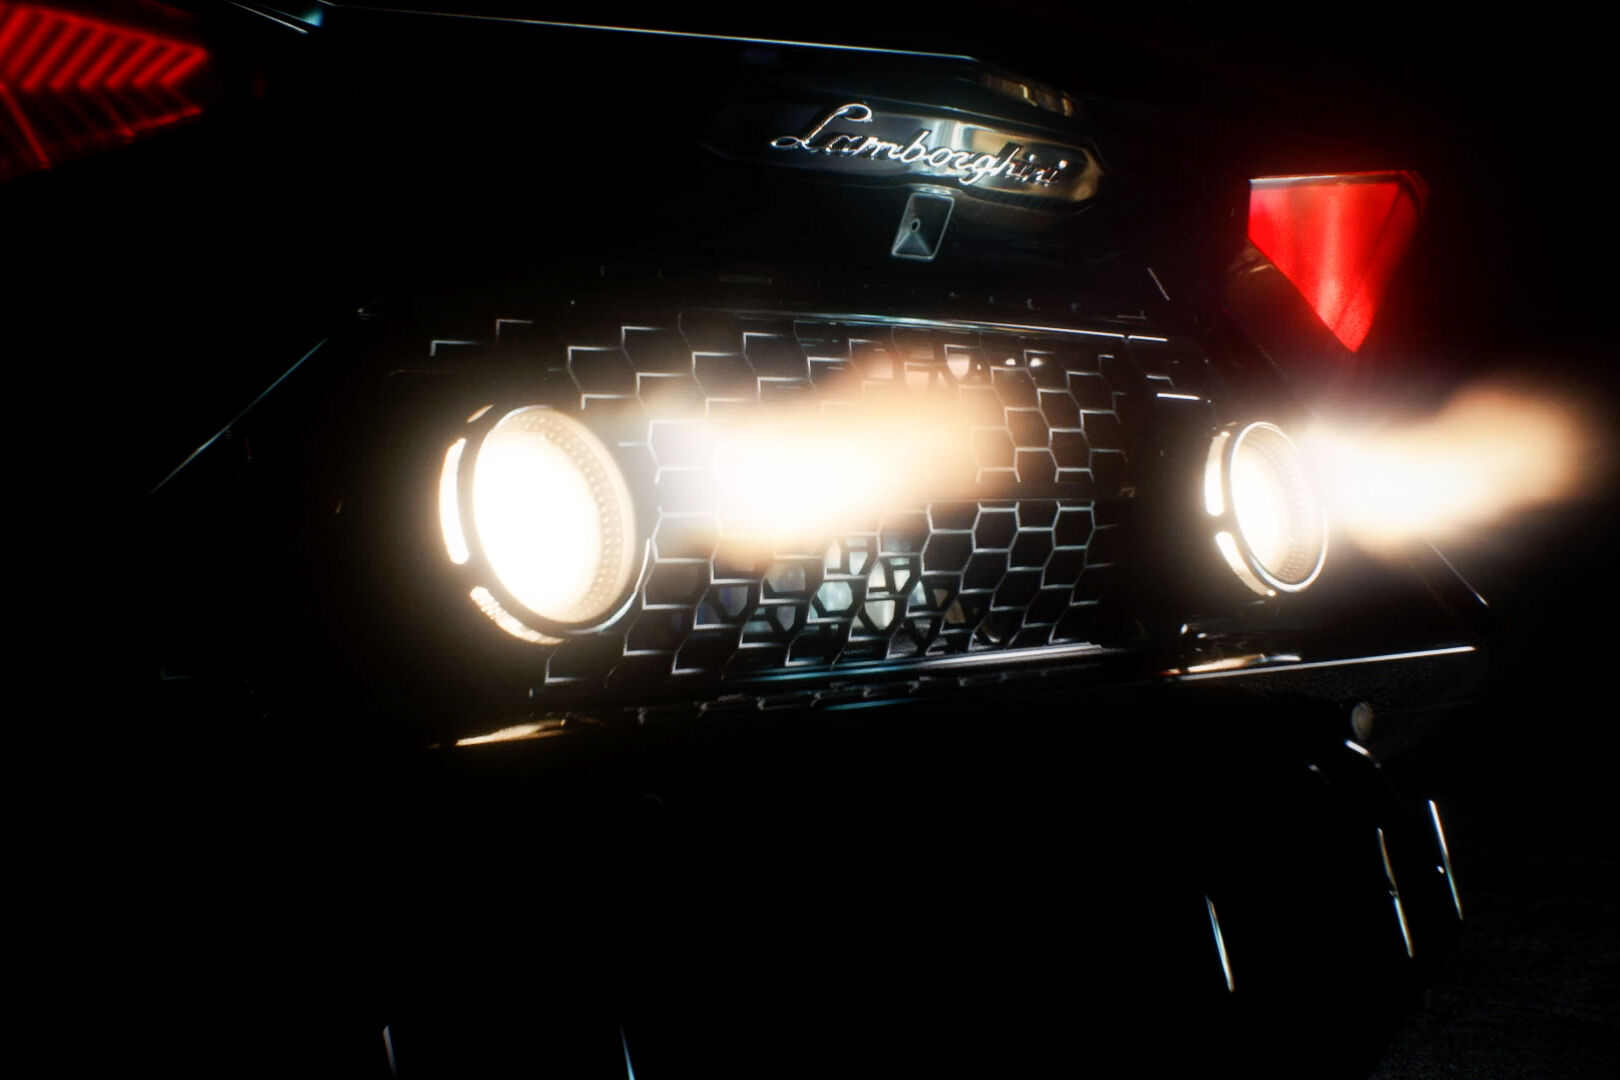 Ексклузивният Lamborghini Aventador LP 780-4 Ultimae Coupé, който ще бъде съчетан с NFT 1.1 и ще бъде продаден на търг на 19 април 2022 г. екранна снимка от видео трейлъра